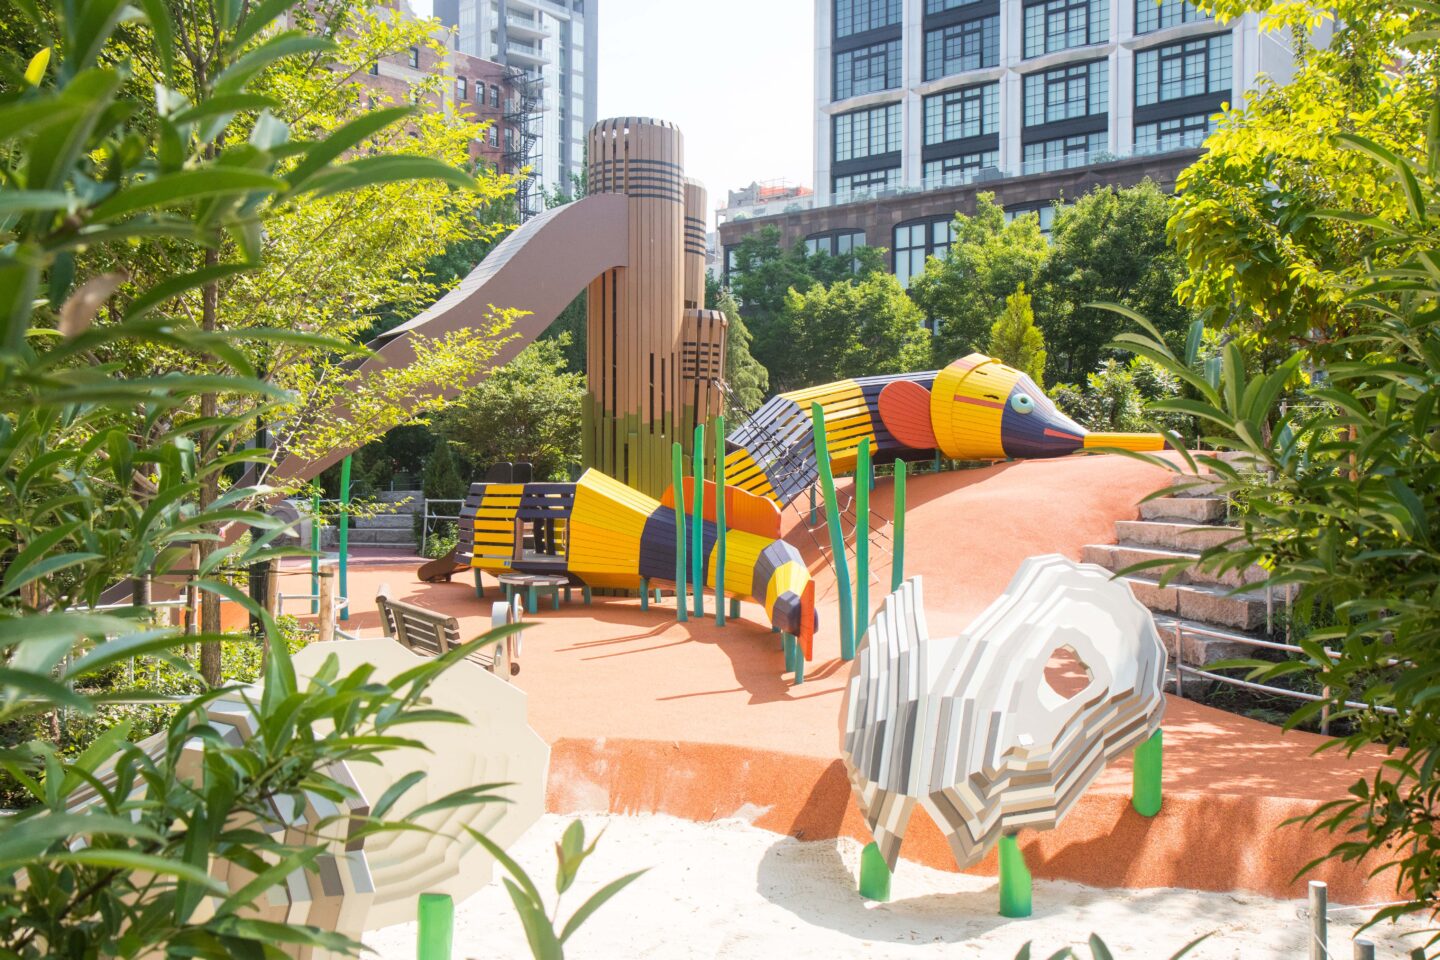 Chelsea Waterside Park Pipefish Slide for the kids